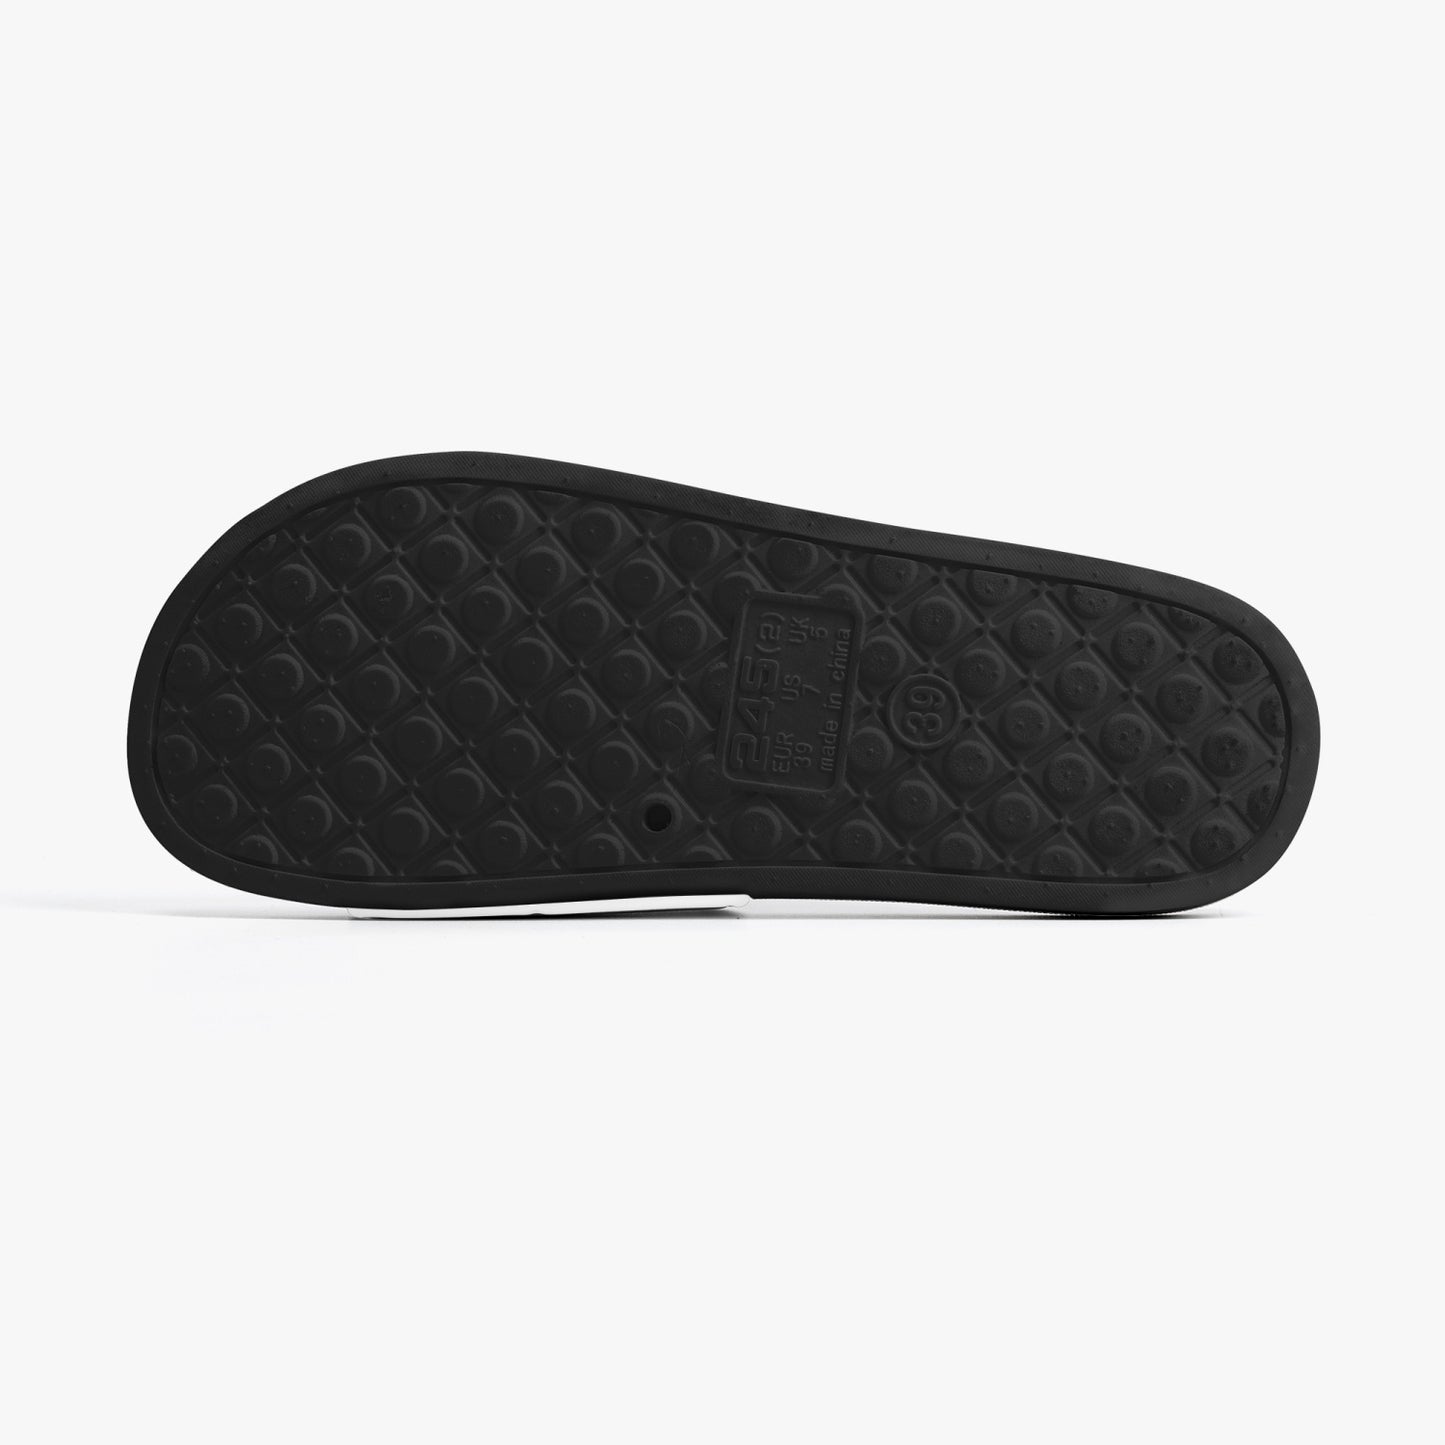 Unisex Casual Sandals 0 - Black 4